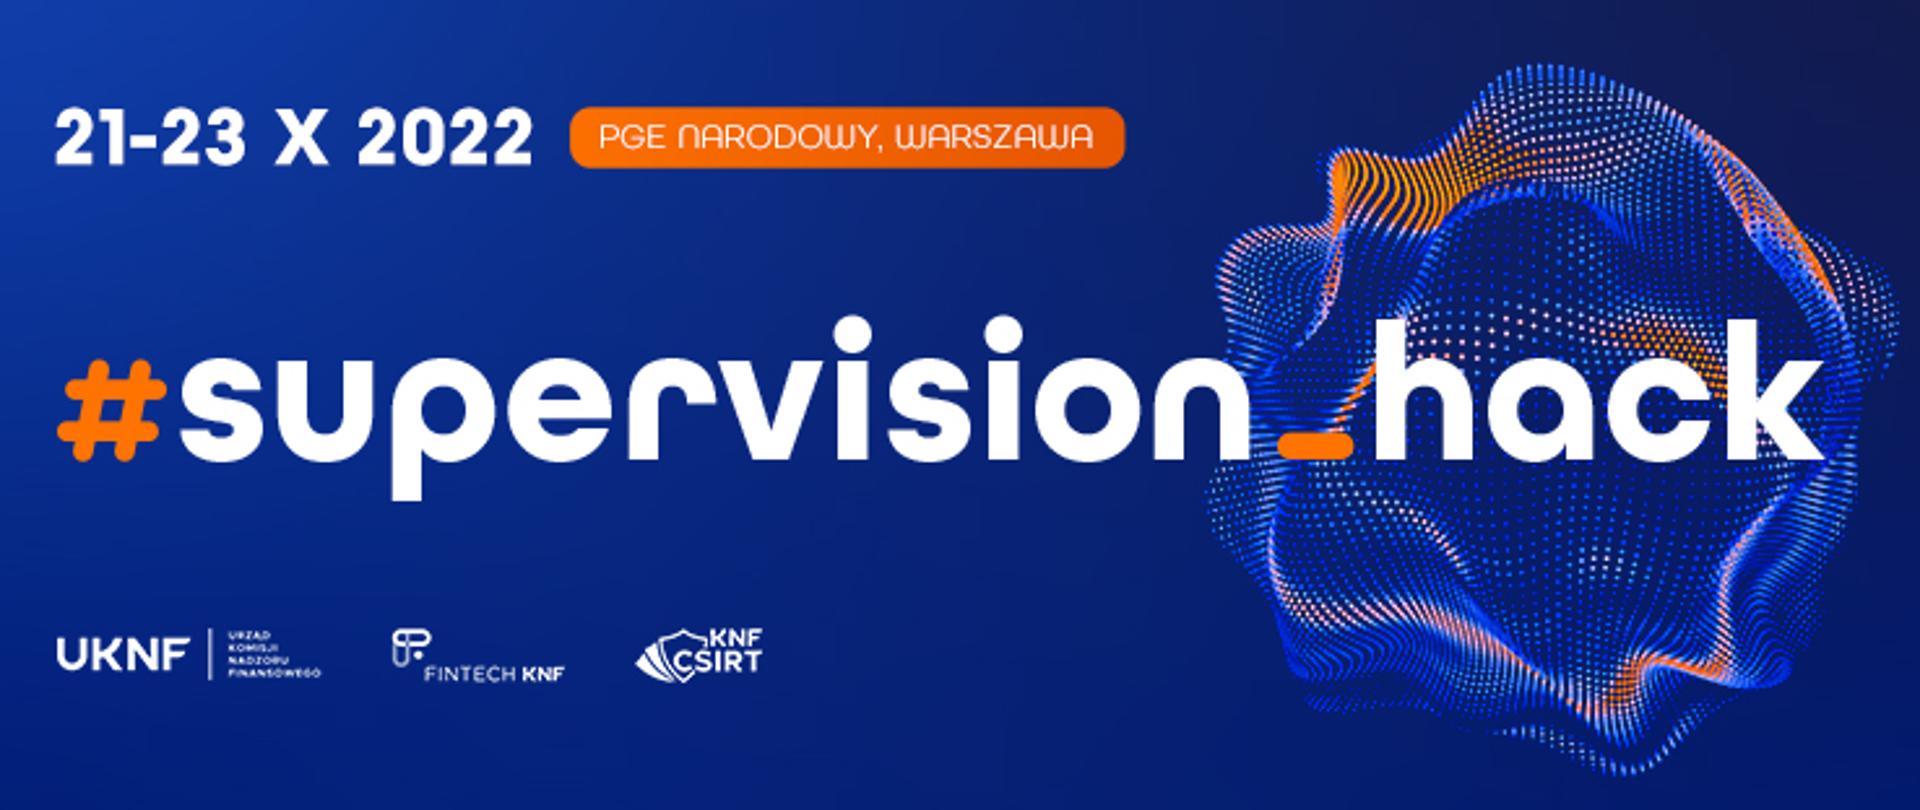 #Supervision_Hack! 21-23 października 2022 r. PGE Narodowy, Warszawa